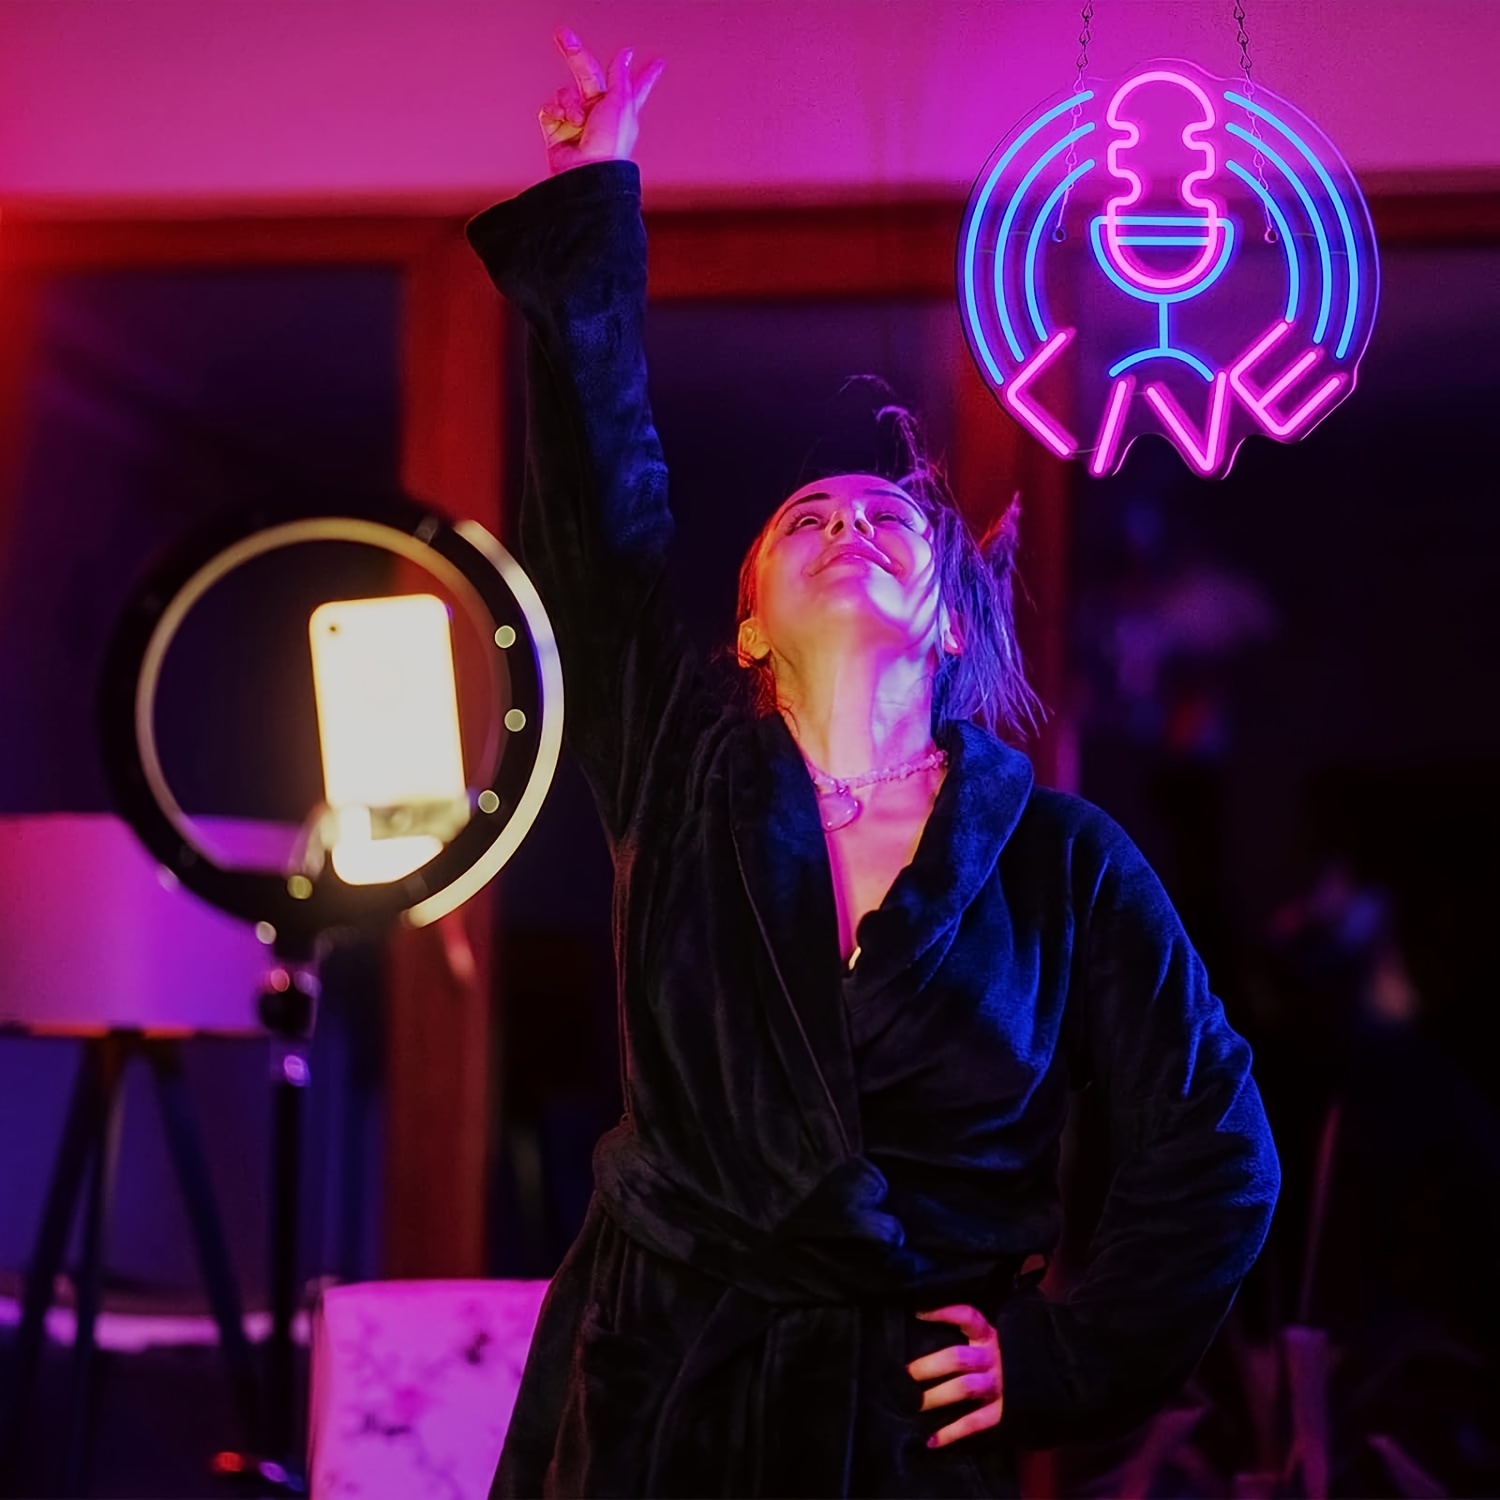 Aufnahme Neon LED Schild Mikrofon On Air Musik Studio Auf / Aus Licht Schild